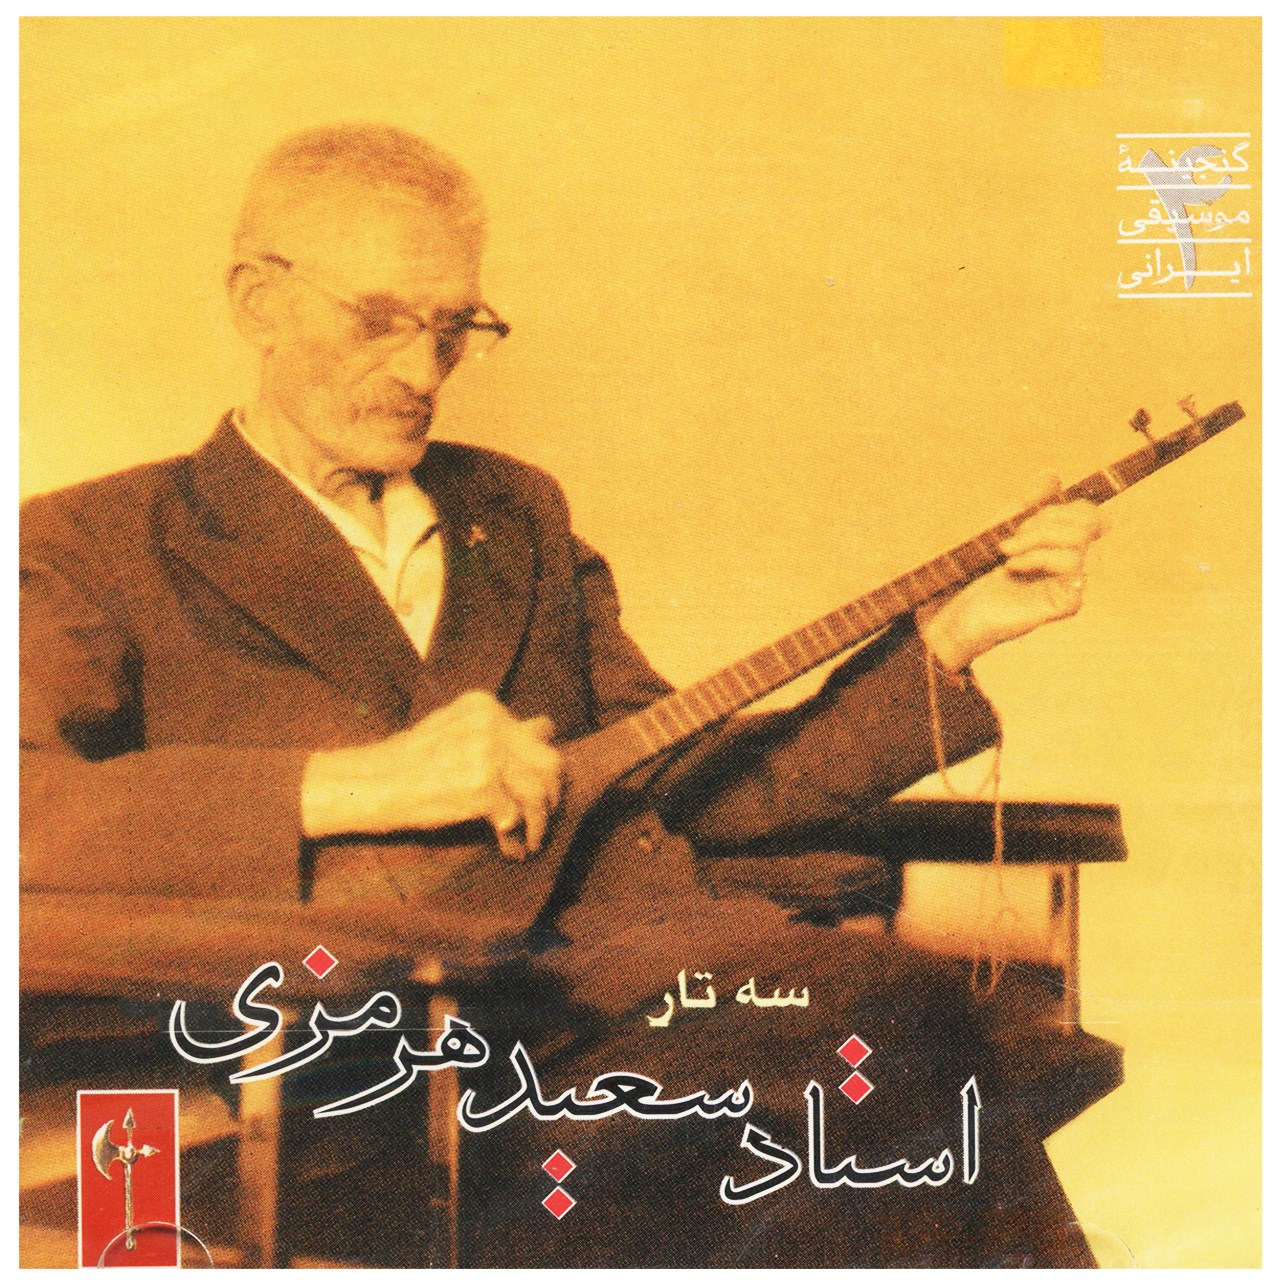 آلبوم موسیقی سه تار اثر سعید هرمزی